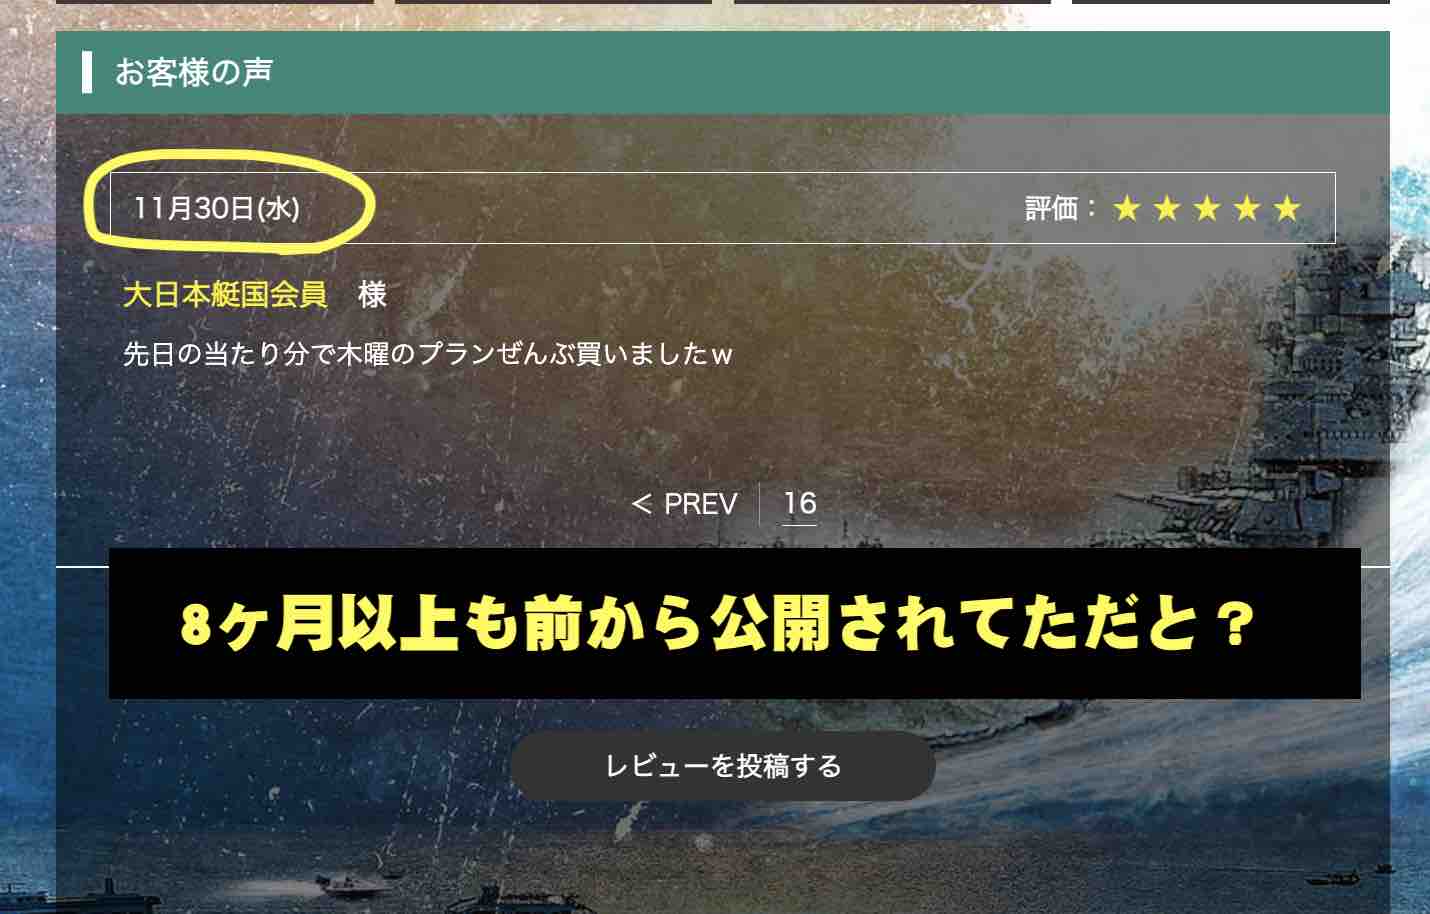 競艇予想サイト「大日本艇国」の「利用者の声」を検証